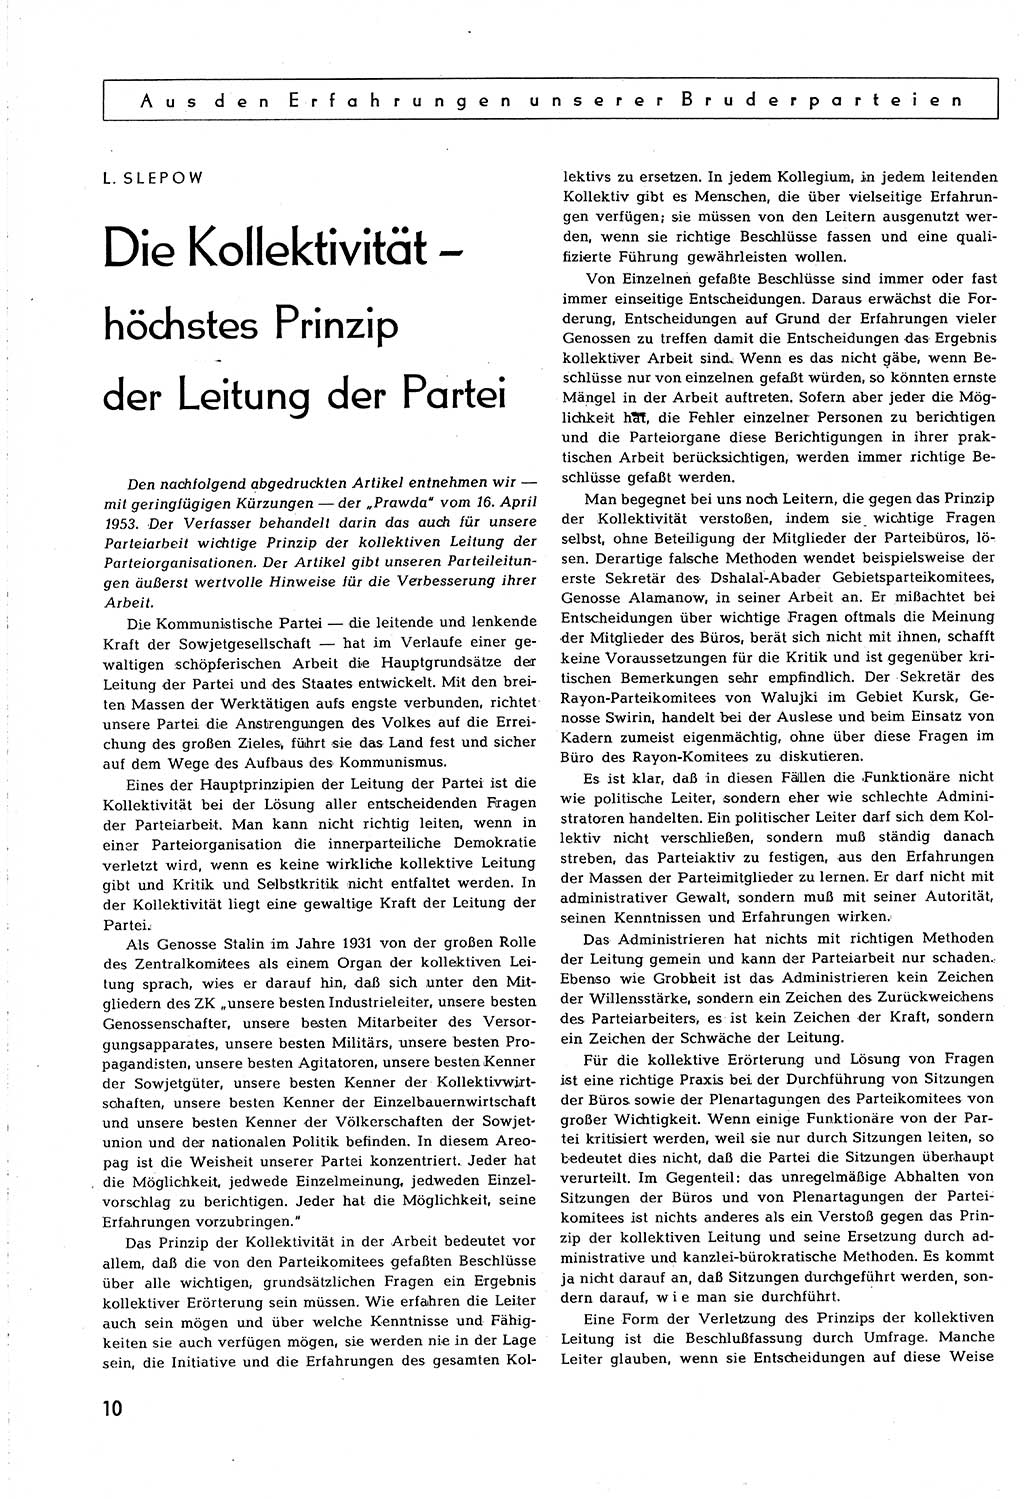 Neuer Weg (NW), Organ des Zentralkomitees (ZK) [Sozialistische Einheitspartei Deutschlands (SED)] für alle Parteiarbeiter, 8. Jahrgang [Deutsche Demokratische Republik (DDR)] 1953, Heft 9/10 (NW ZK SED DDR 1953, H. 9/10)